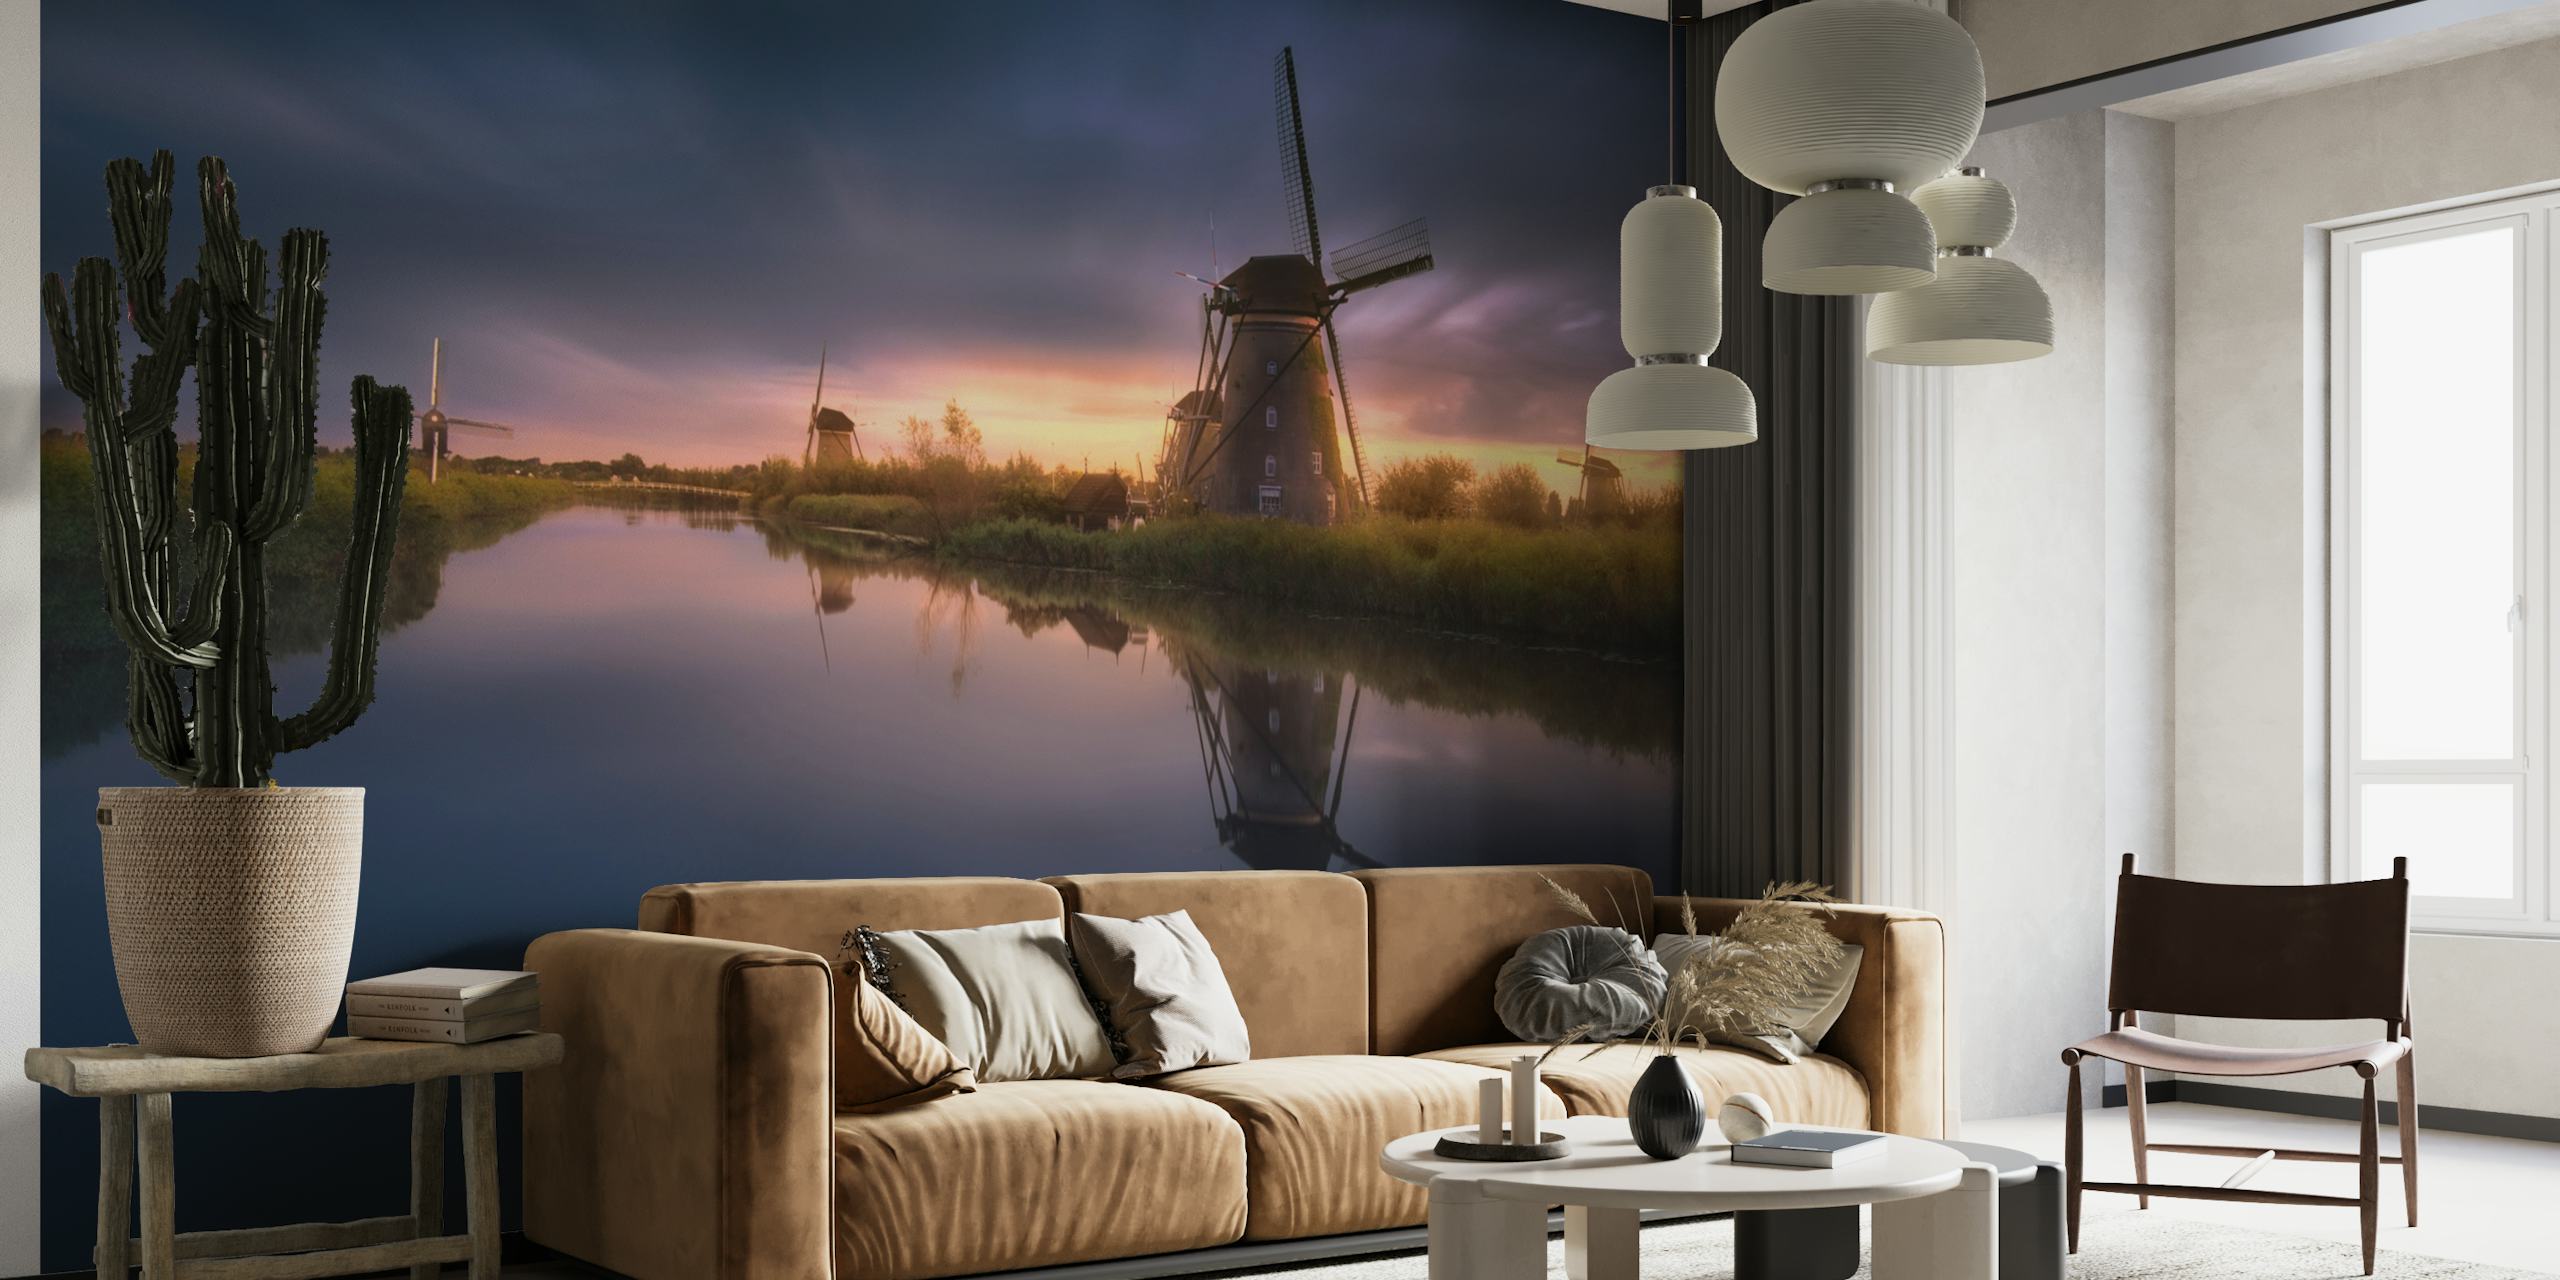 Mural de parede Kinderdijk Windmills com um pôr do sol ao fundo, refletindo nas águas calmas